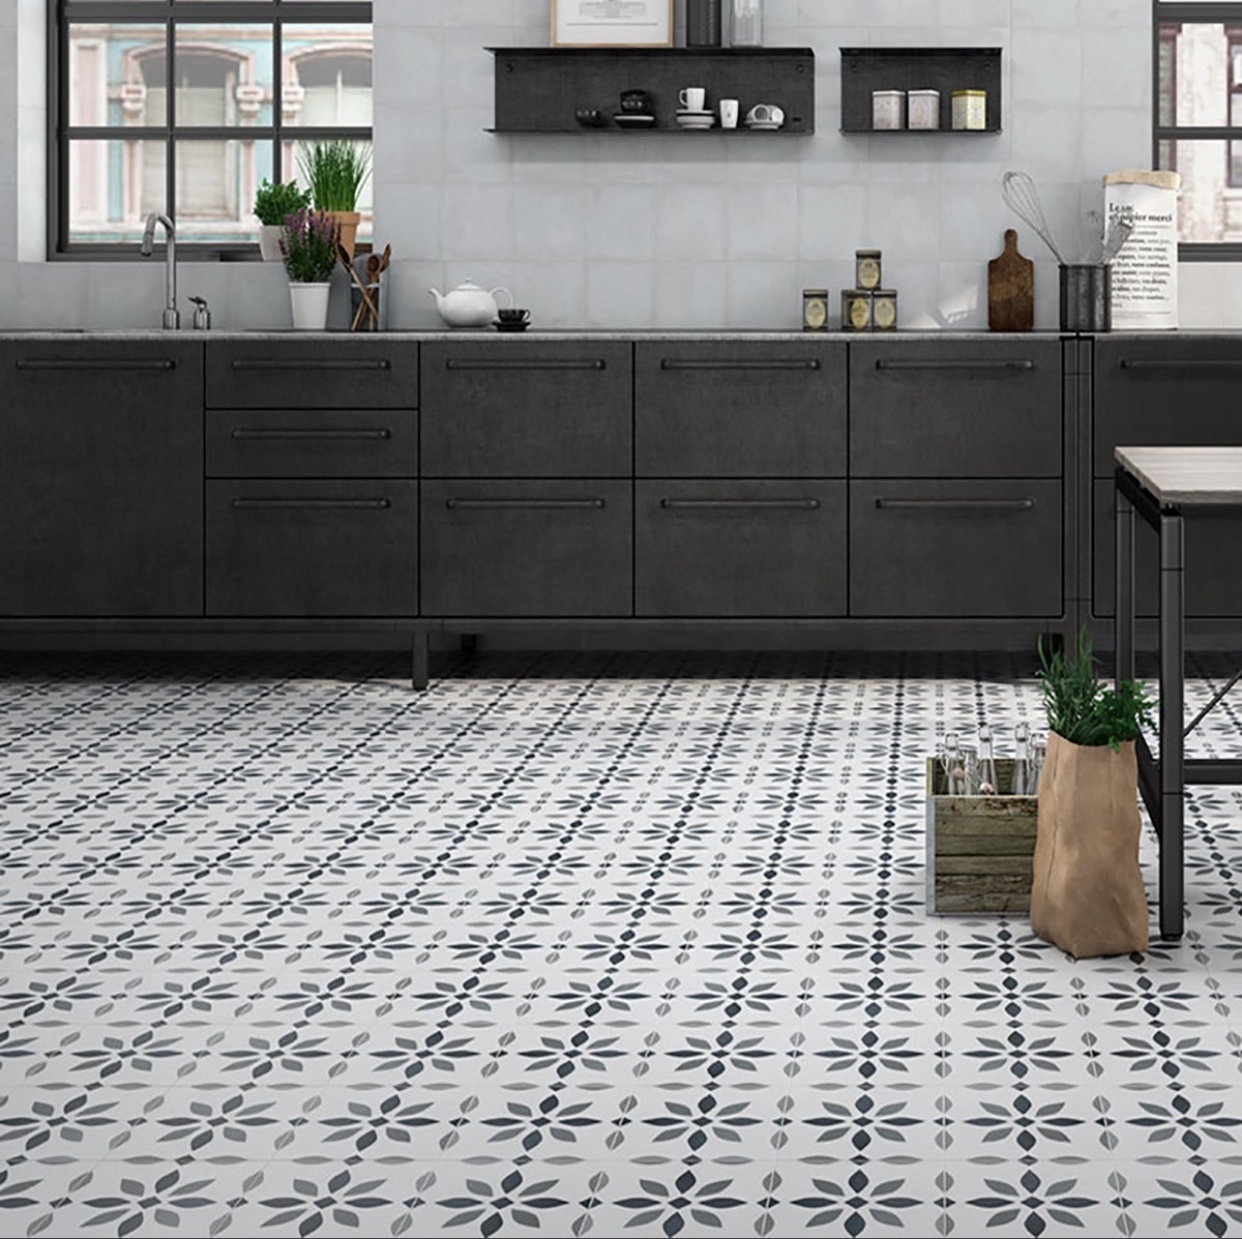 The Modern Flower Pattern Floor Tile 223x223mm Luxury Tiles